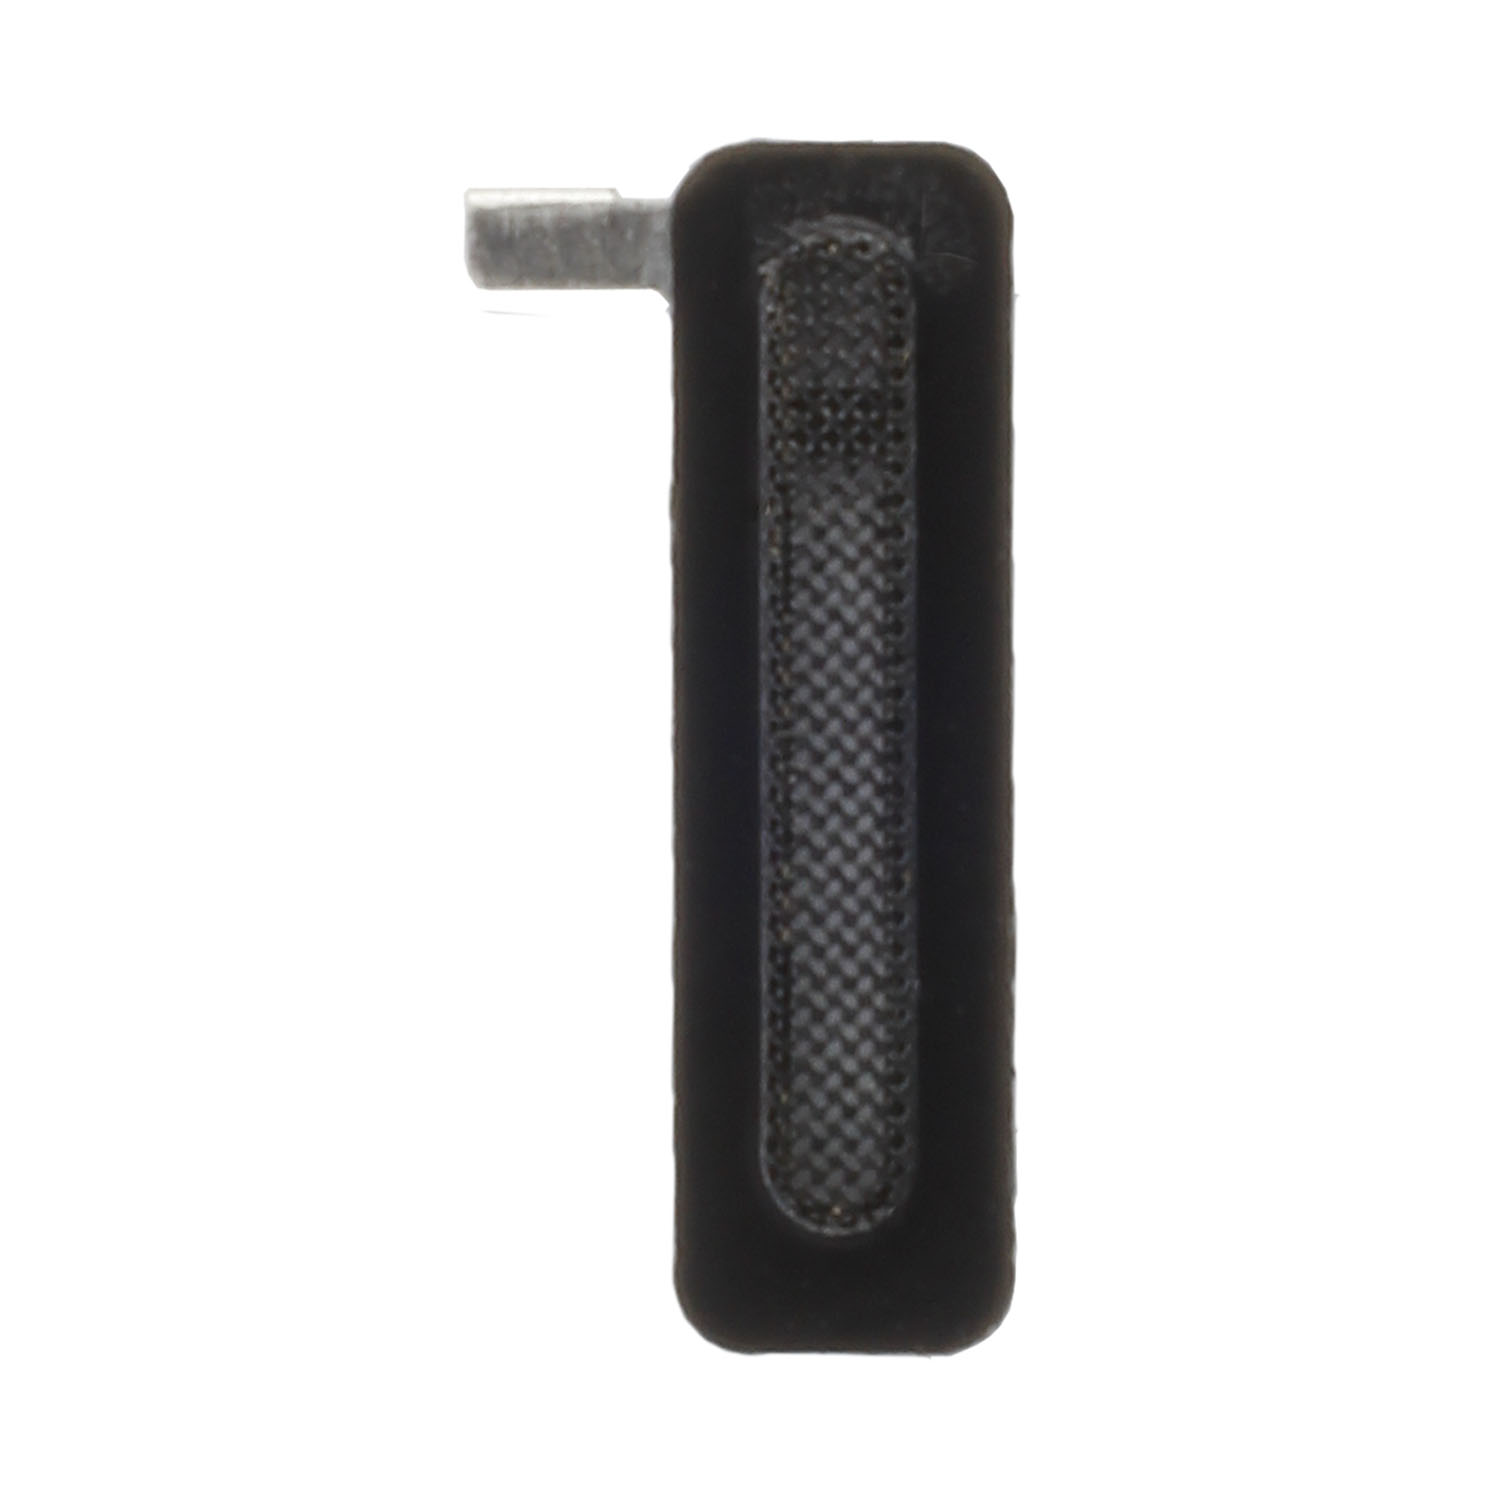 Ohrlautsprecher Gitter kompatibel mit iPhone 11 Pro/11 Pro Max